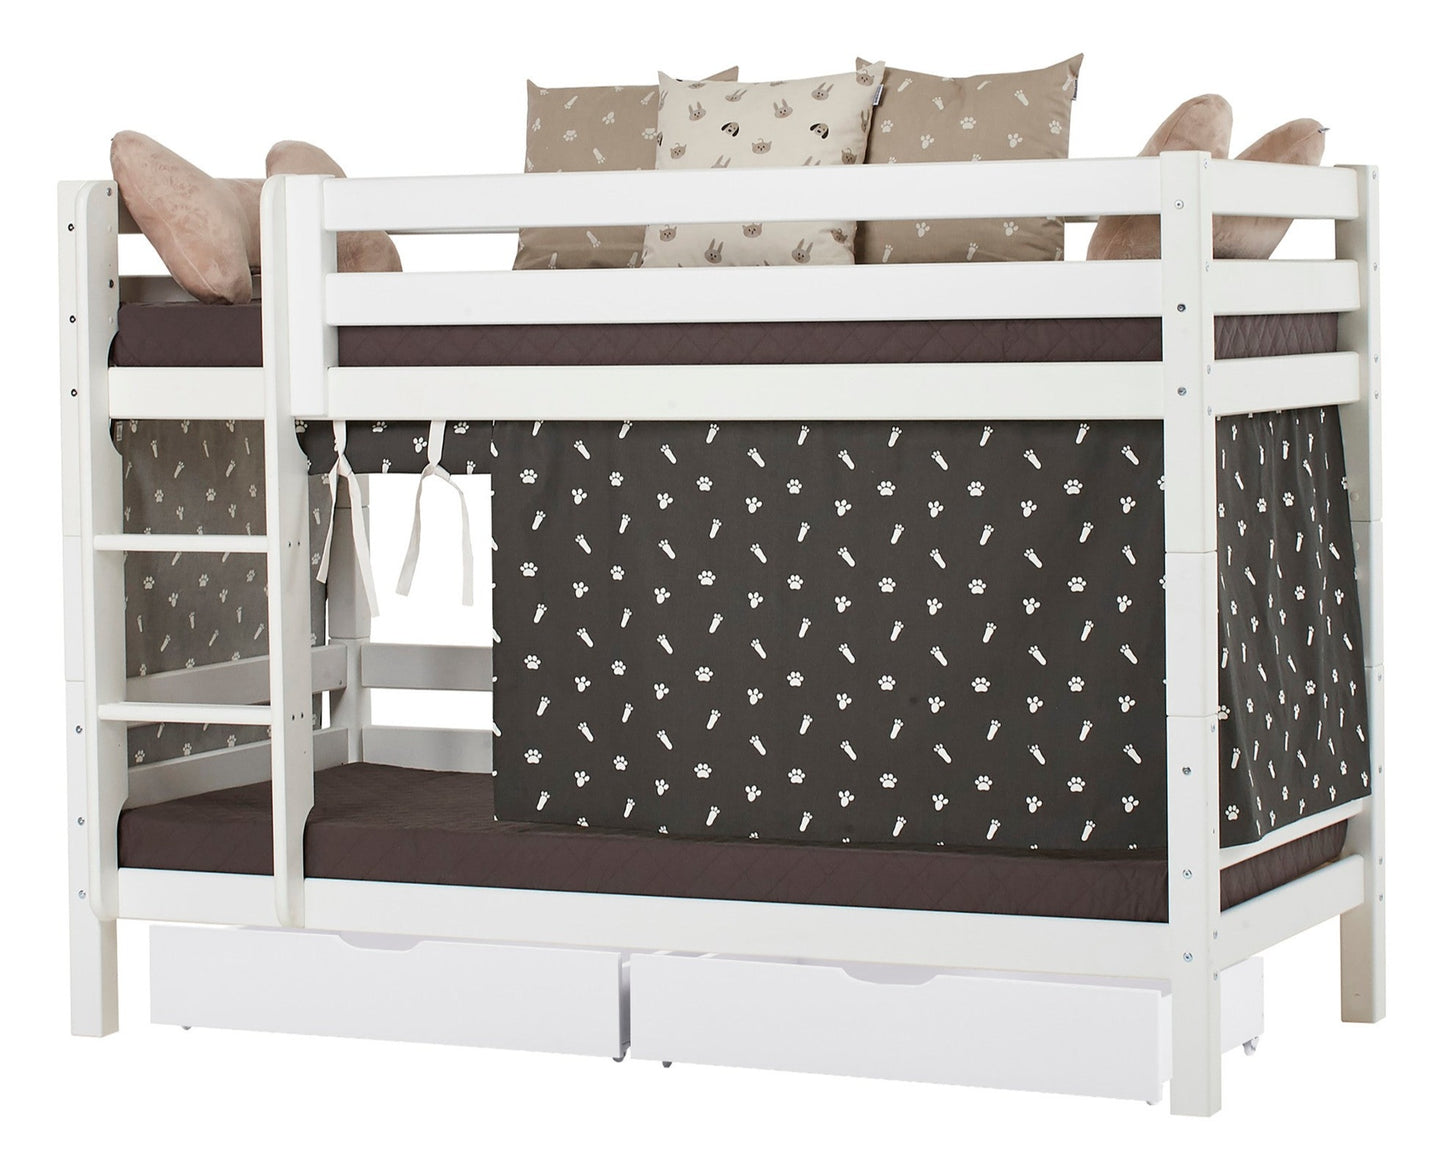 Домашние животные - Занавес для полувысокой и двухъярусной кровати - 90x200 см - Гранитно-серый